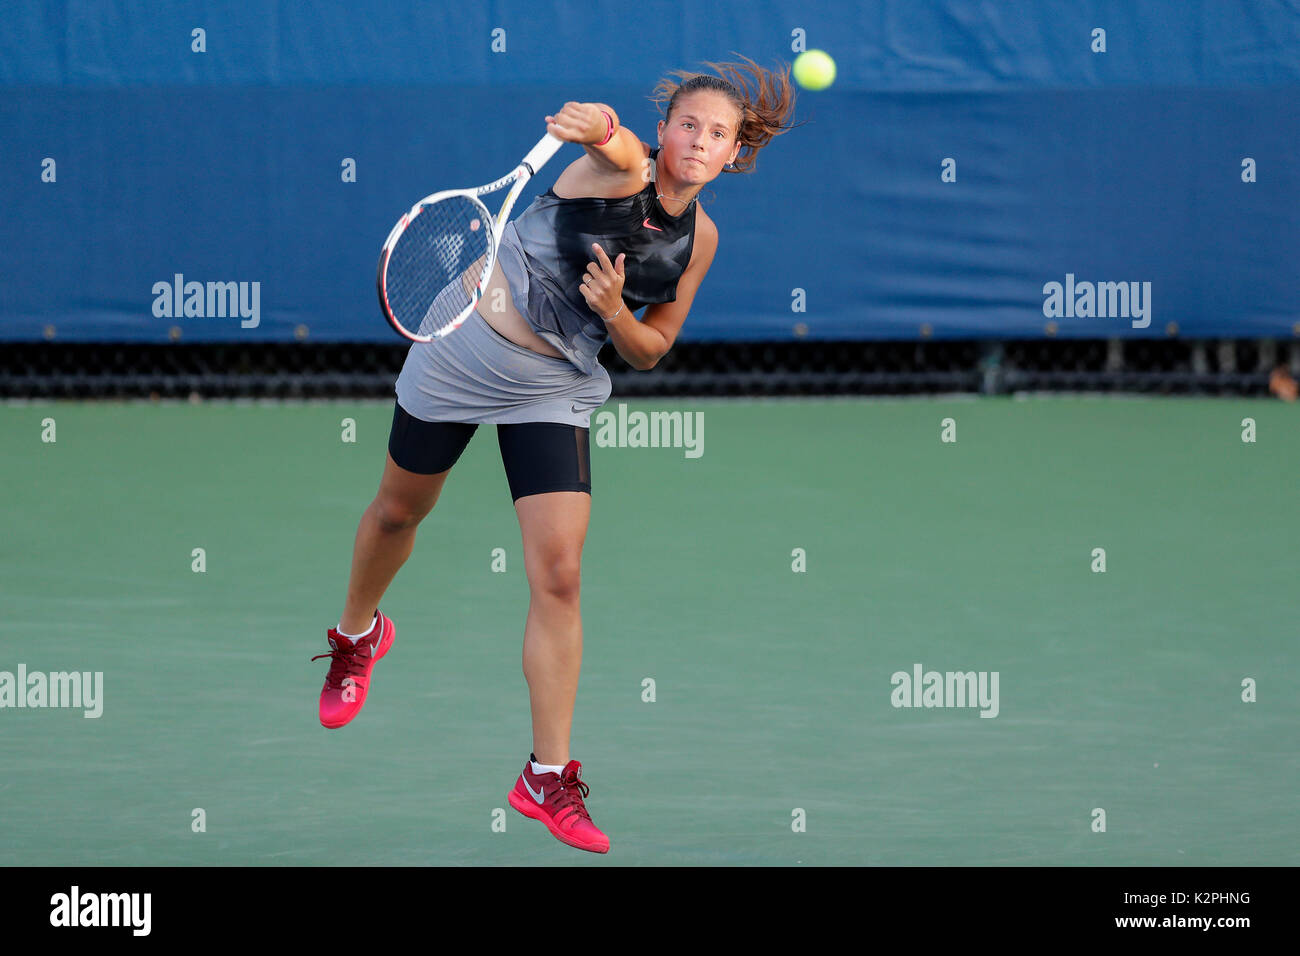 New York, USA. Août 30, 2017. Daria Kasatkina sert de la Russie au cours de la première série de match contre Wang Qiang de la Chine à l'US Open 2017 Tournoi de tennis à New York, États-Unis, 30 août 2017. Credit : Muzi Li/Xinhua/Alamy Live News Banque D'Images